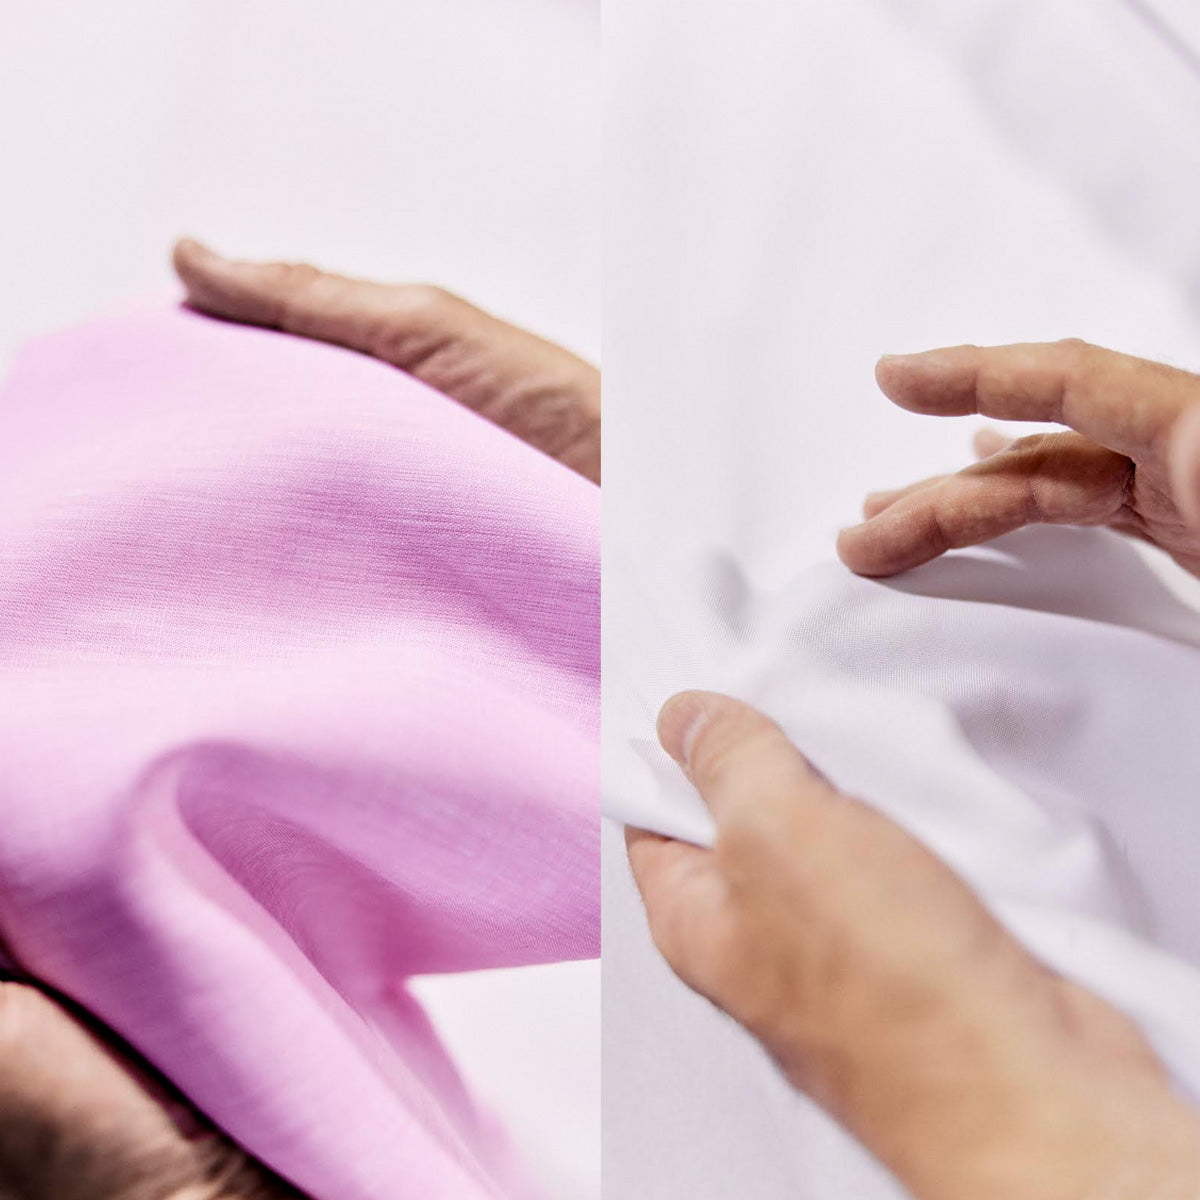 composición de dos imágenes mostrando la calidad de los tejidos